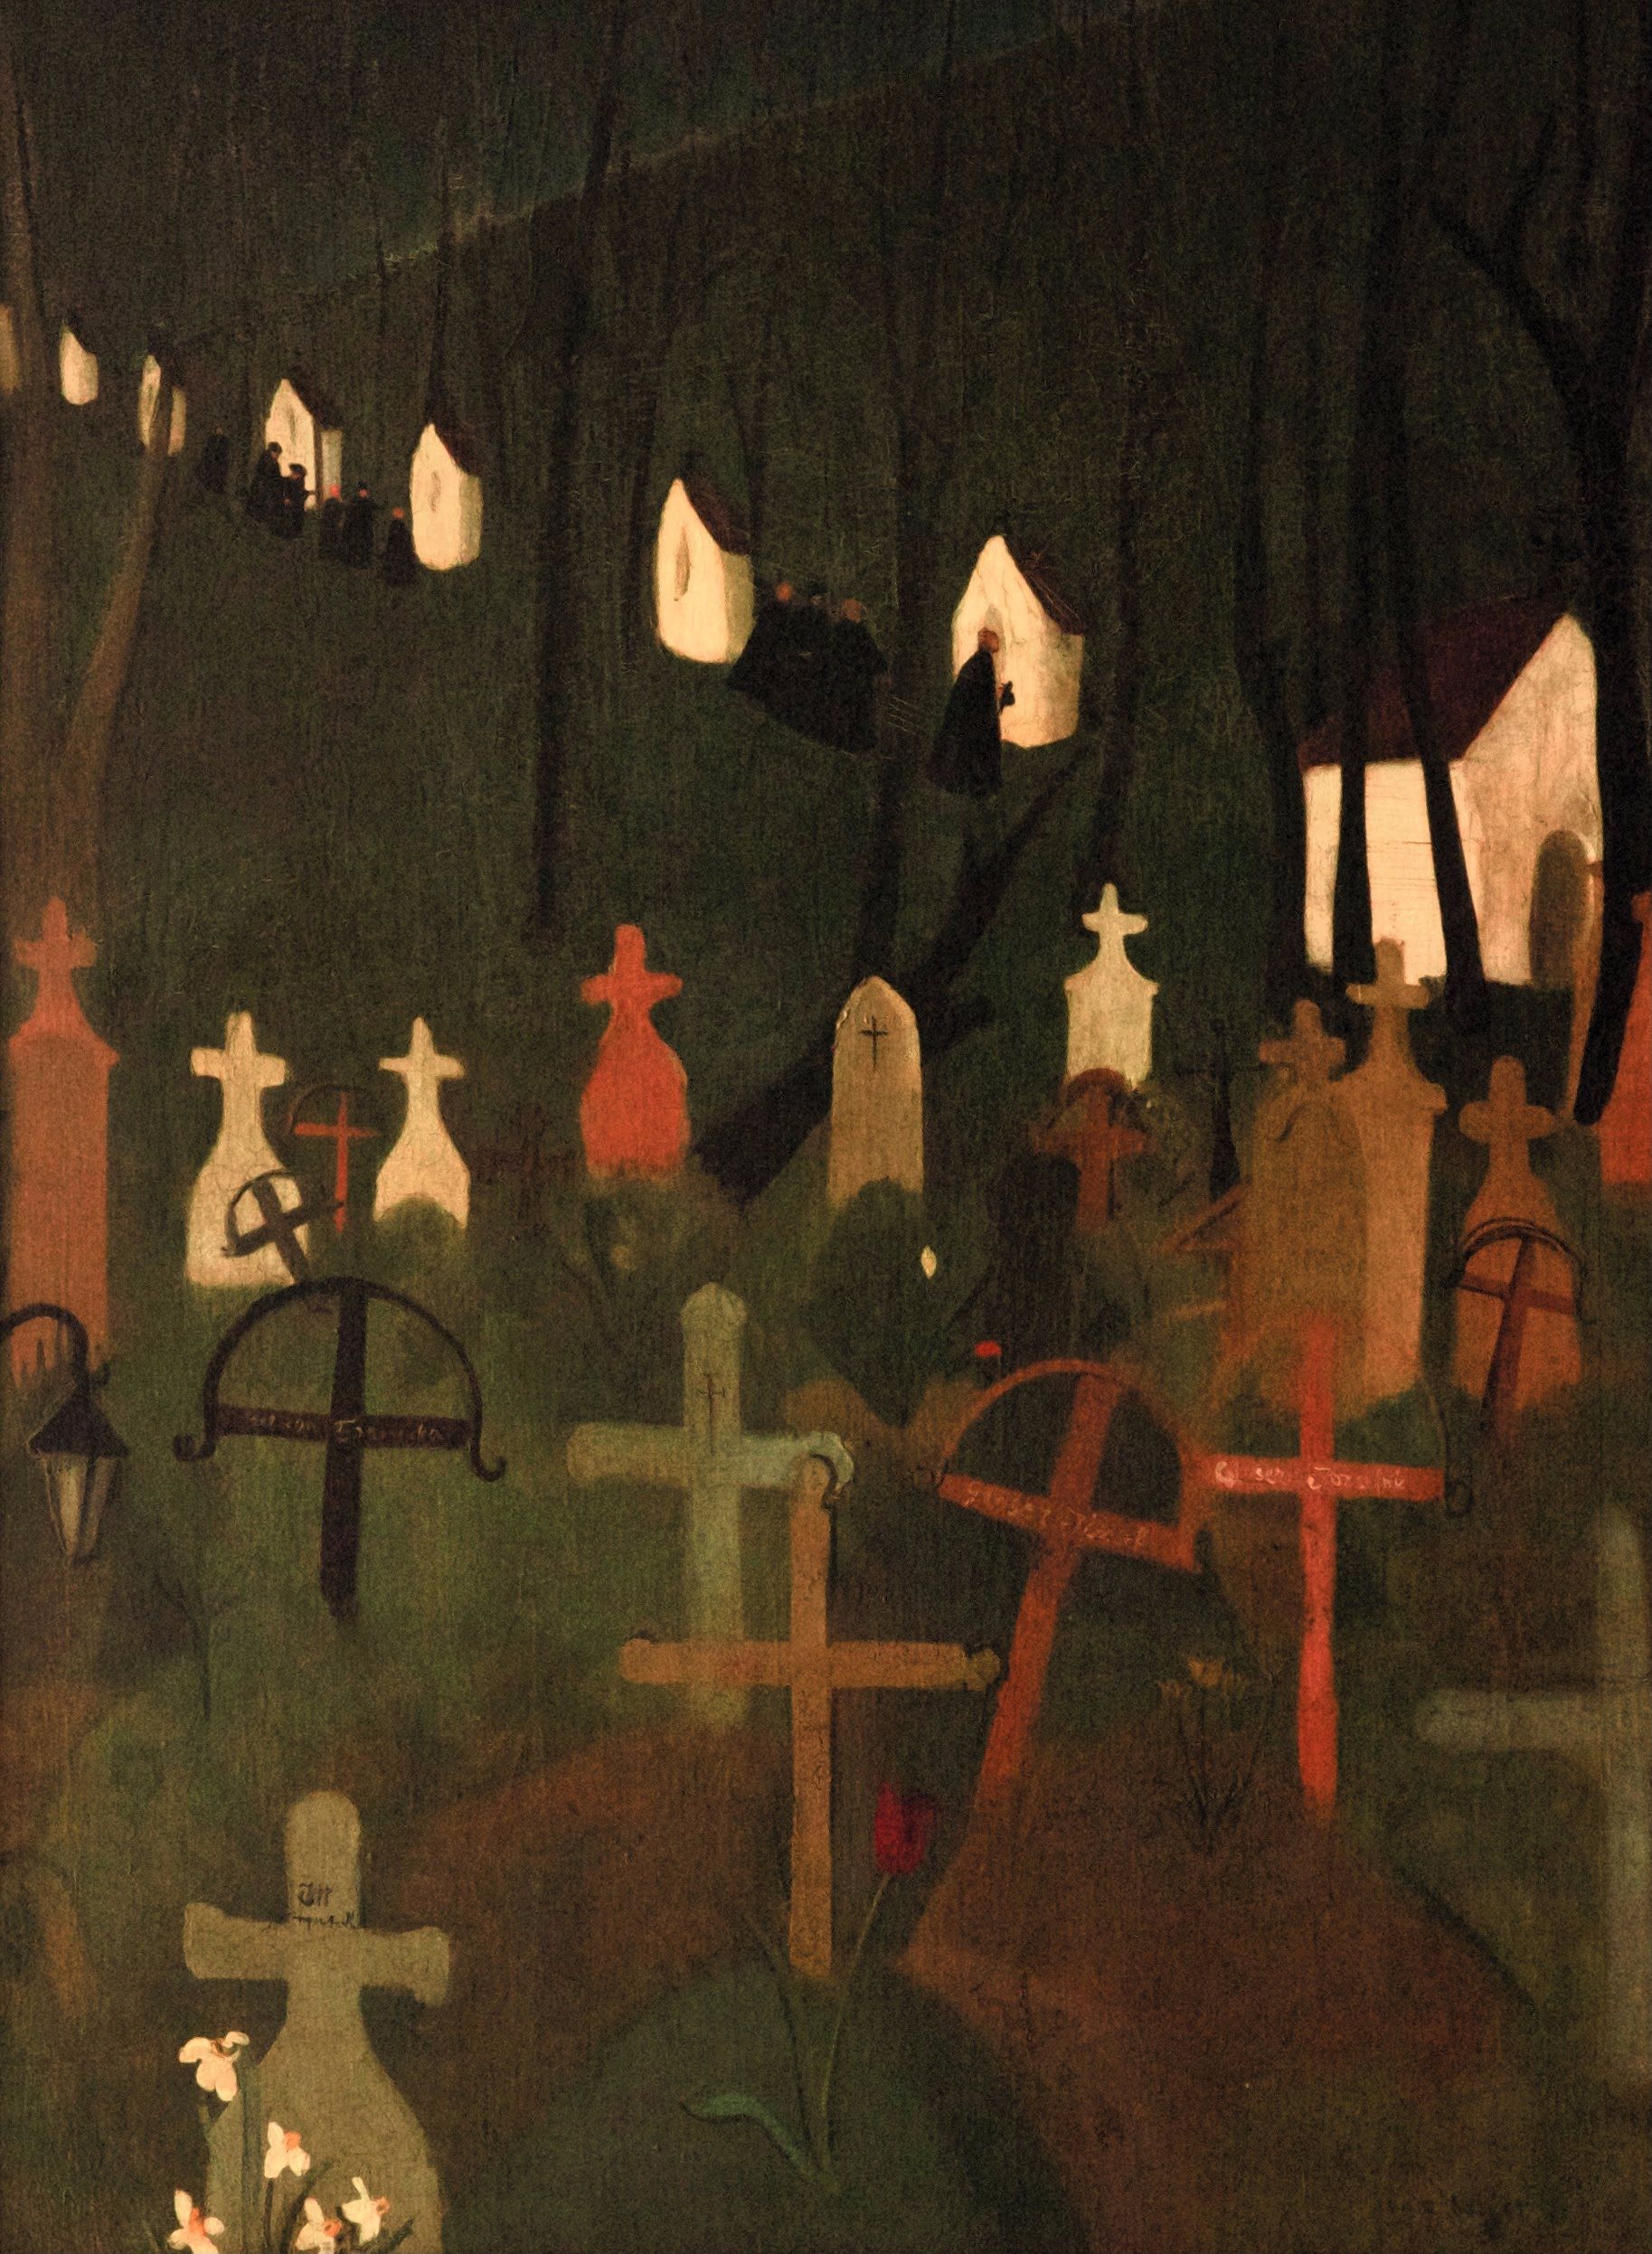 浮かれた墓場《The Merry Cemetery》 by Amrita Sher-Gil - 1939 - 75 x 100.5 cm 